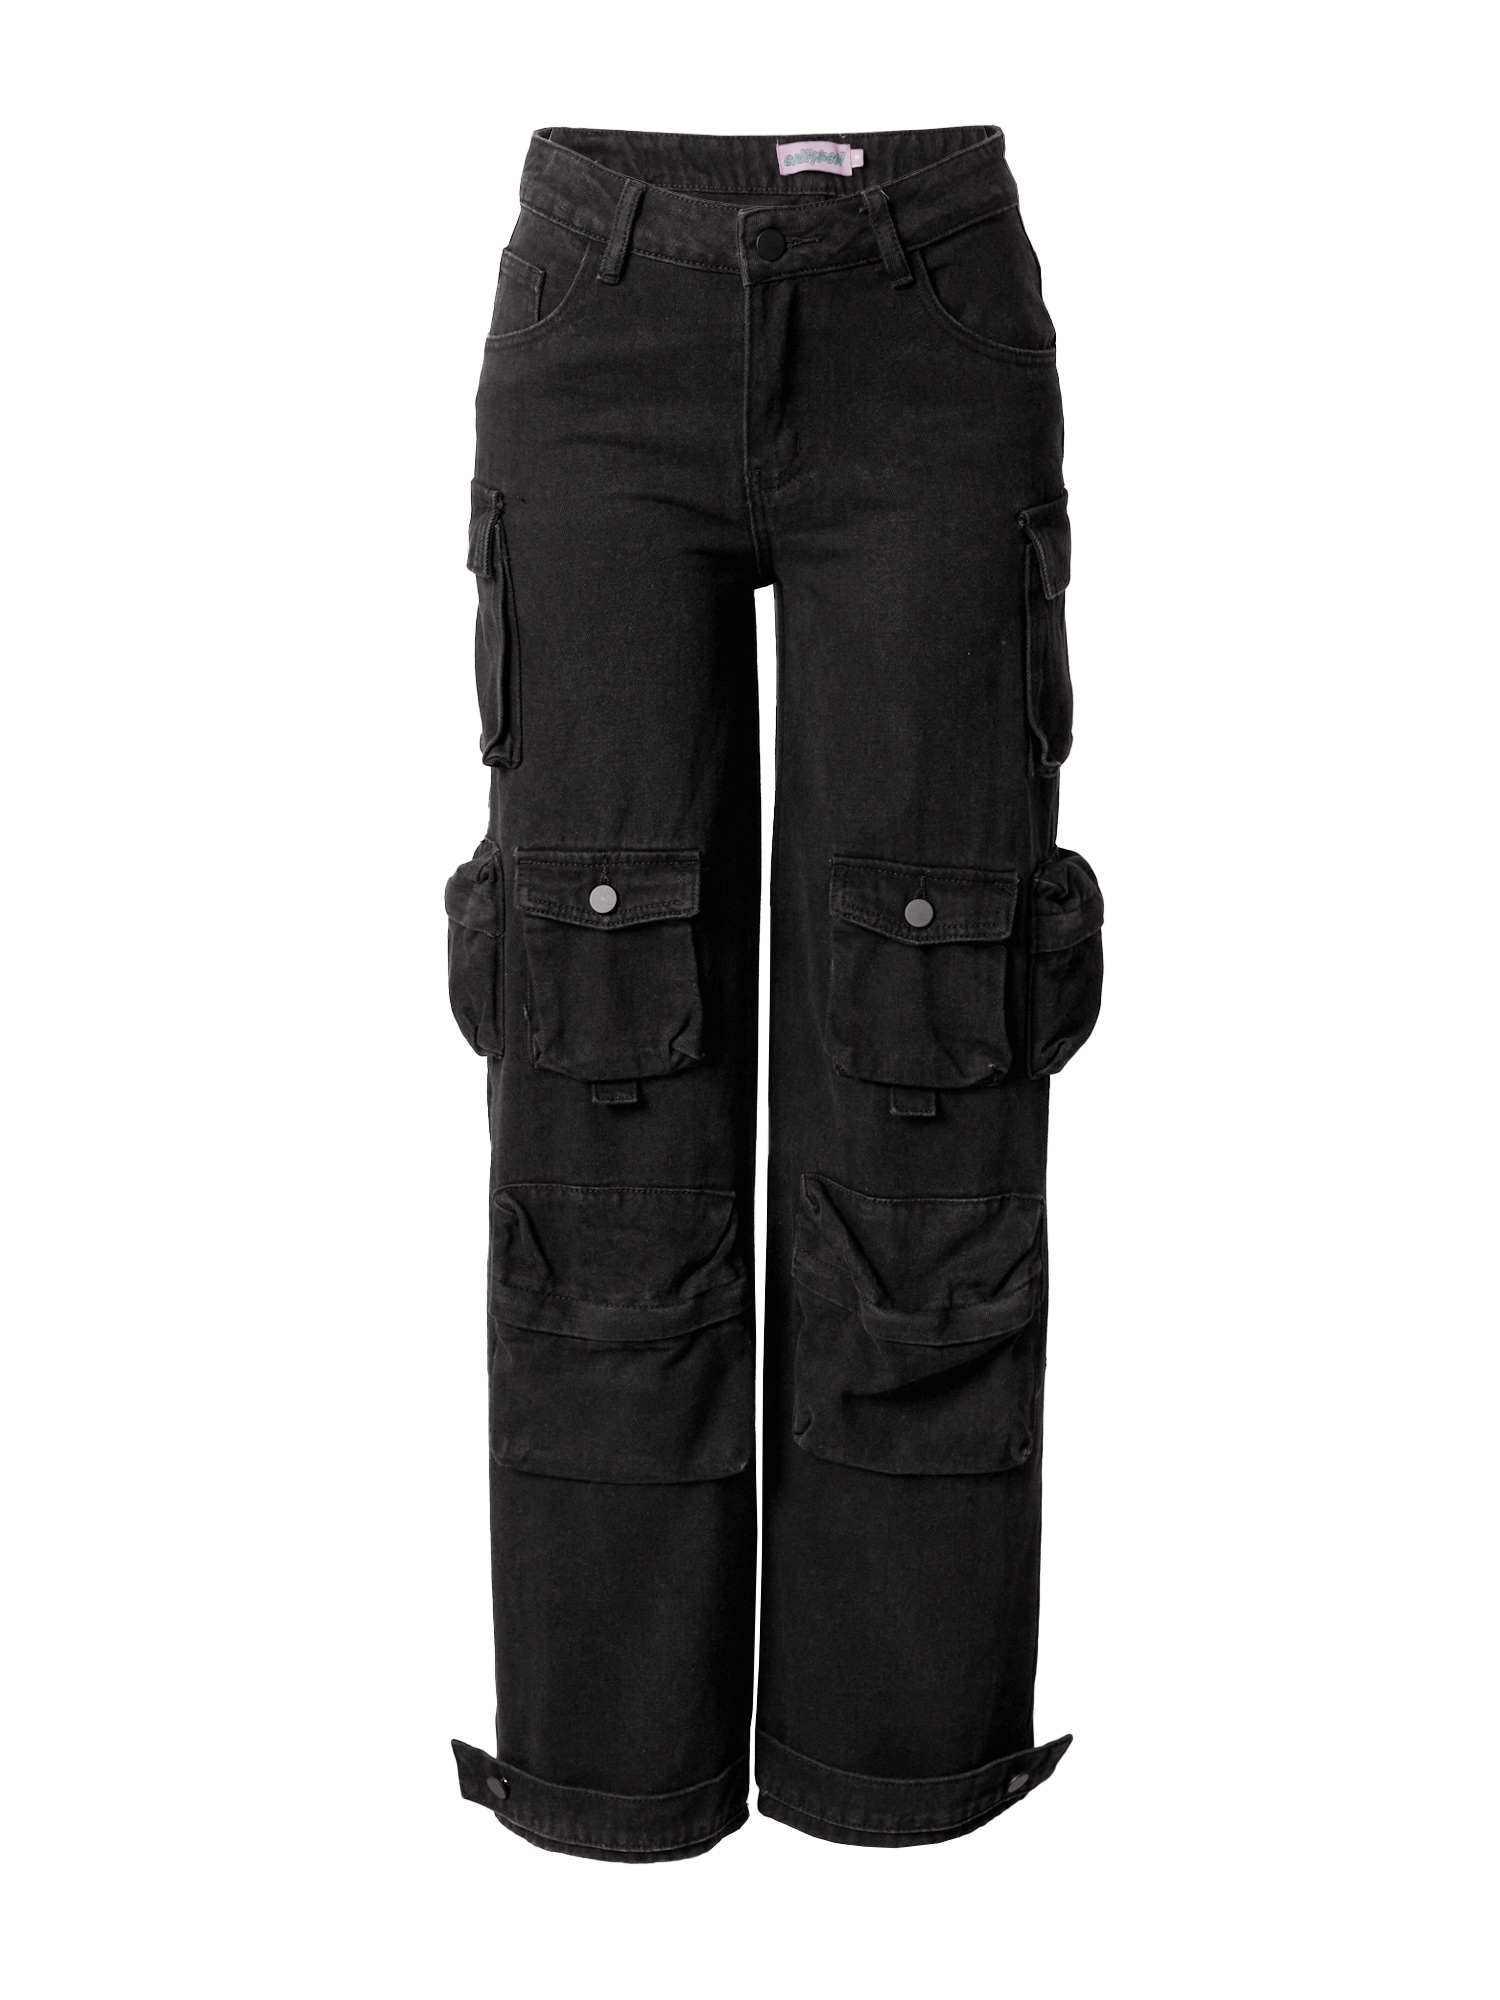 Edikted Darbinio stiliaus džinsai juodo džinso spalva